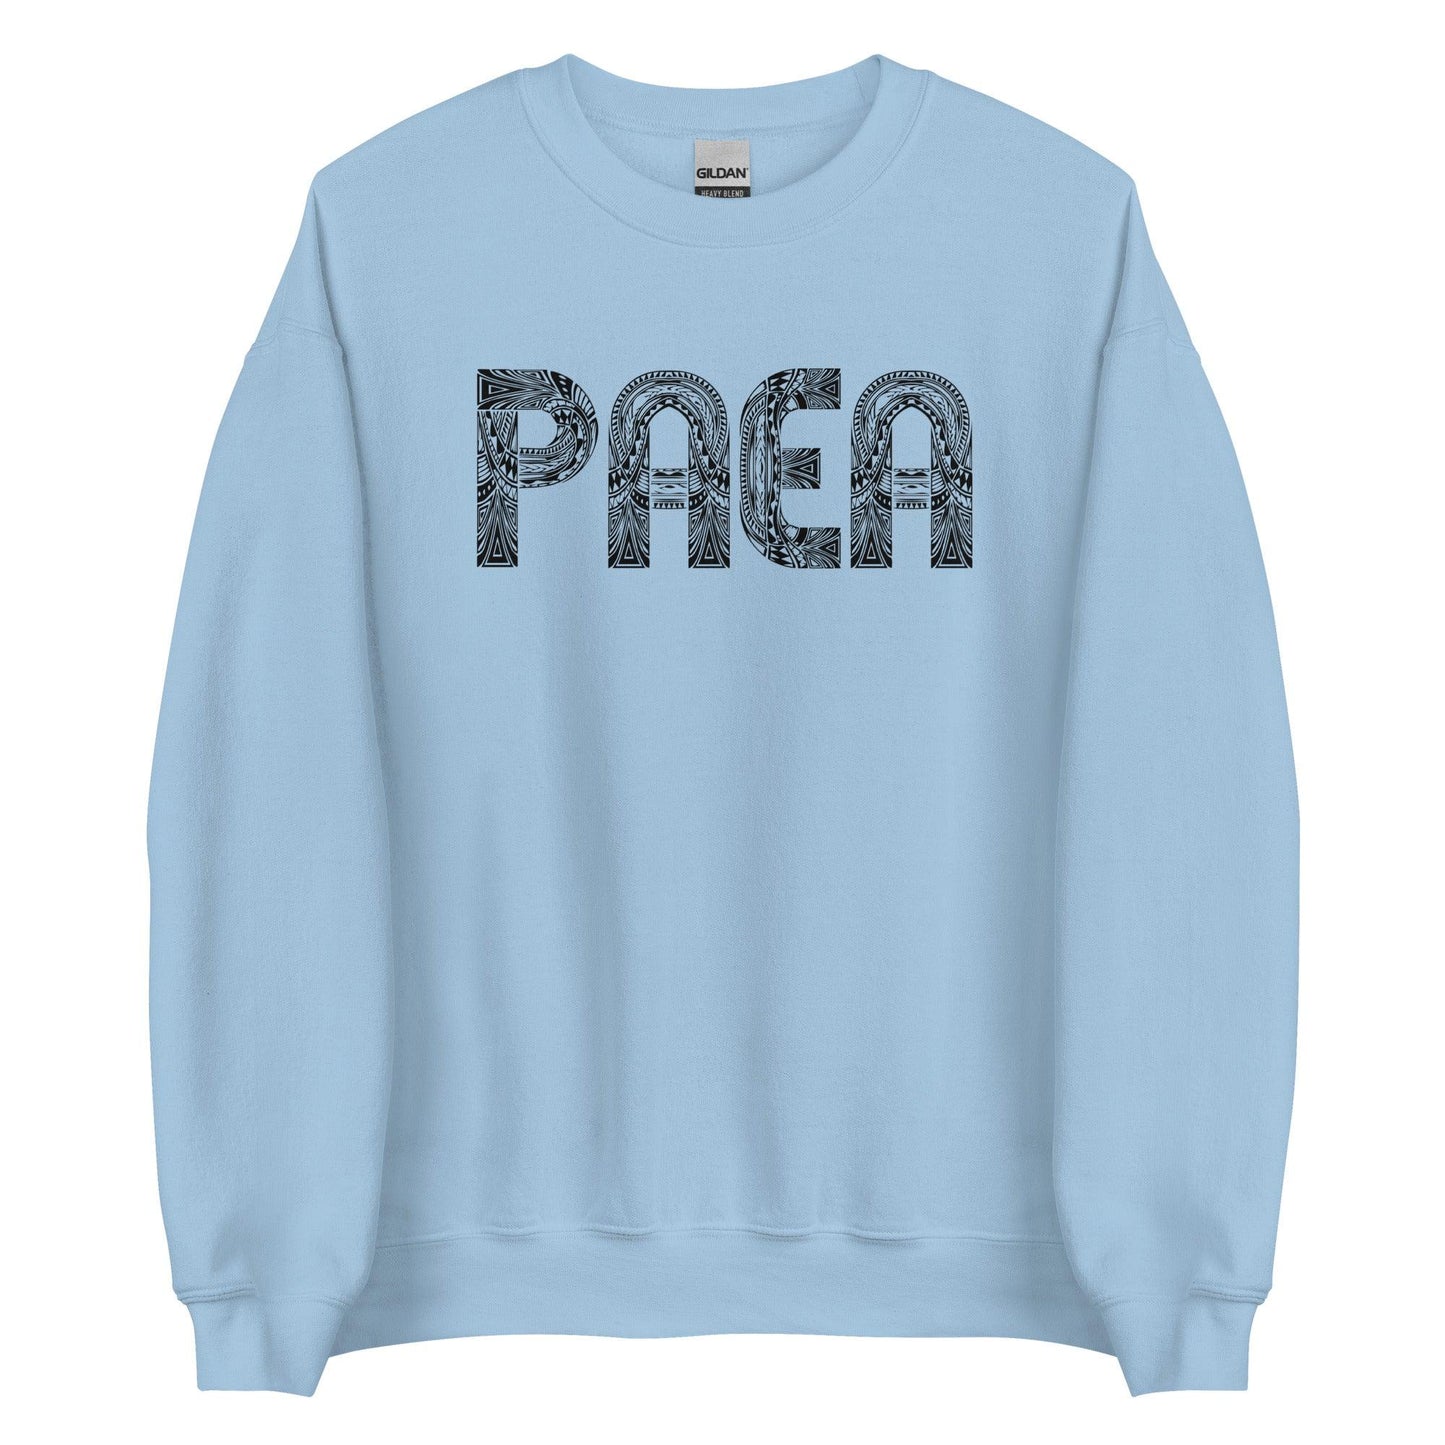 Phill Paea "Origins" Sweatshirt - Fan Arch